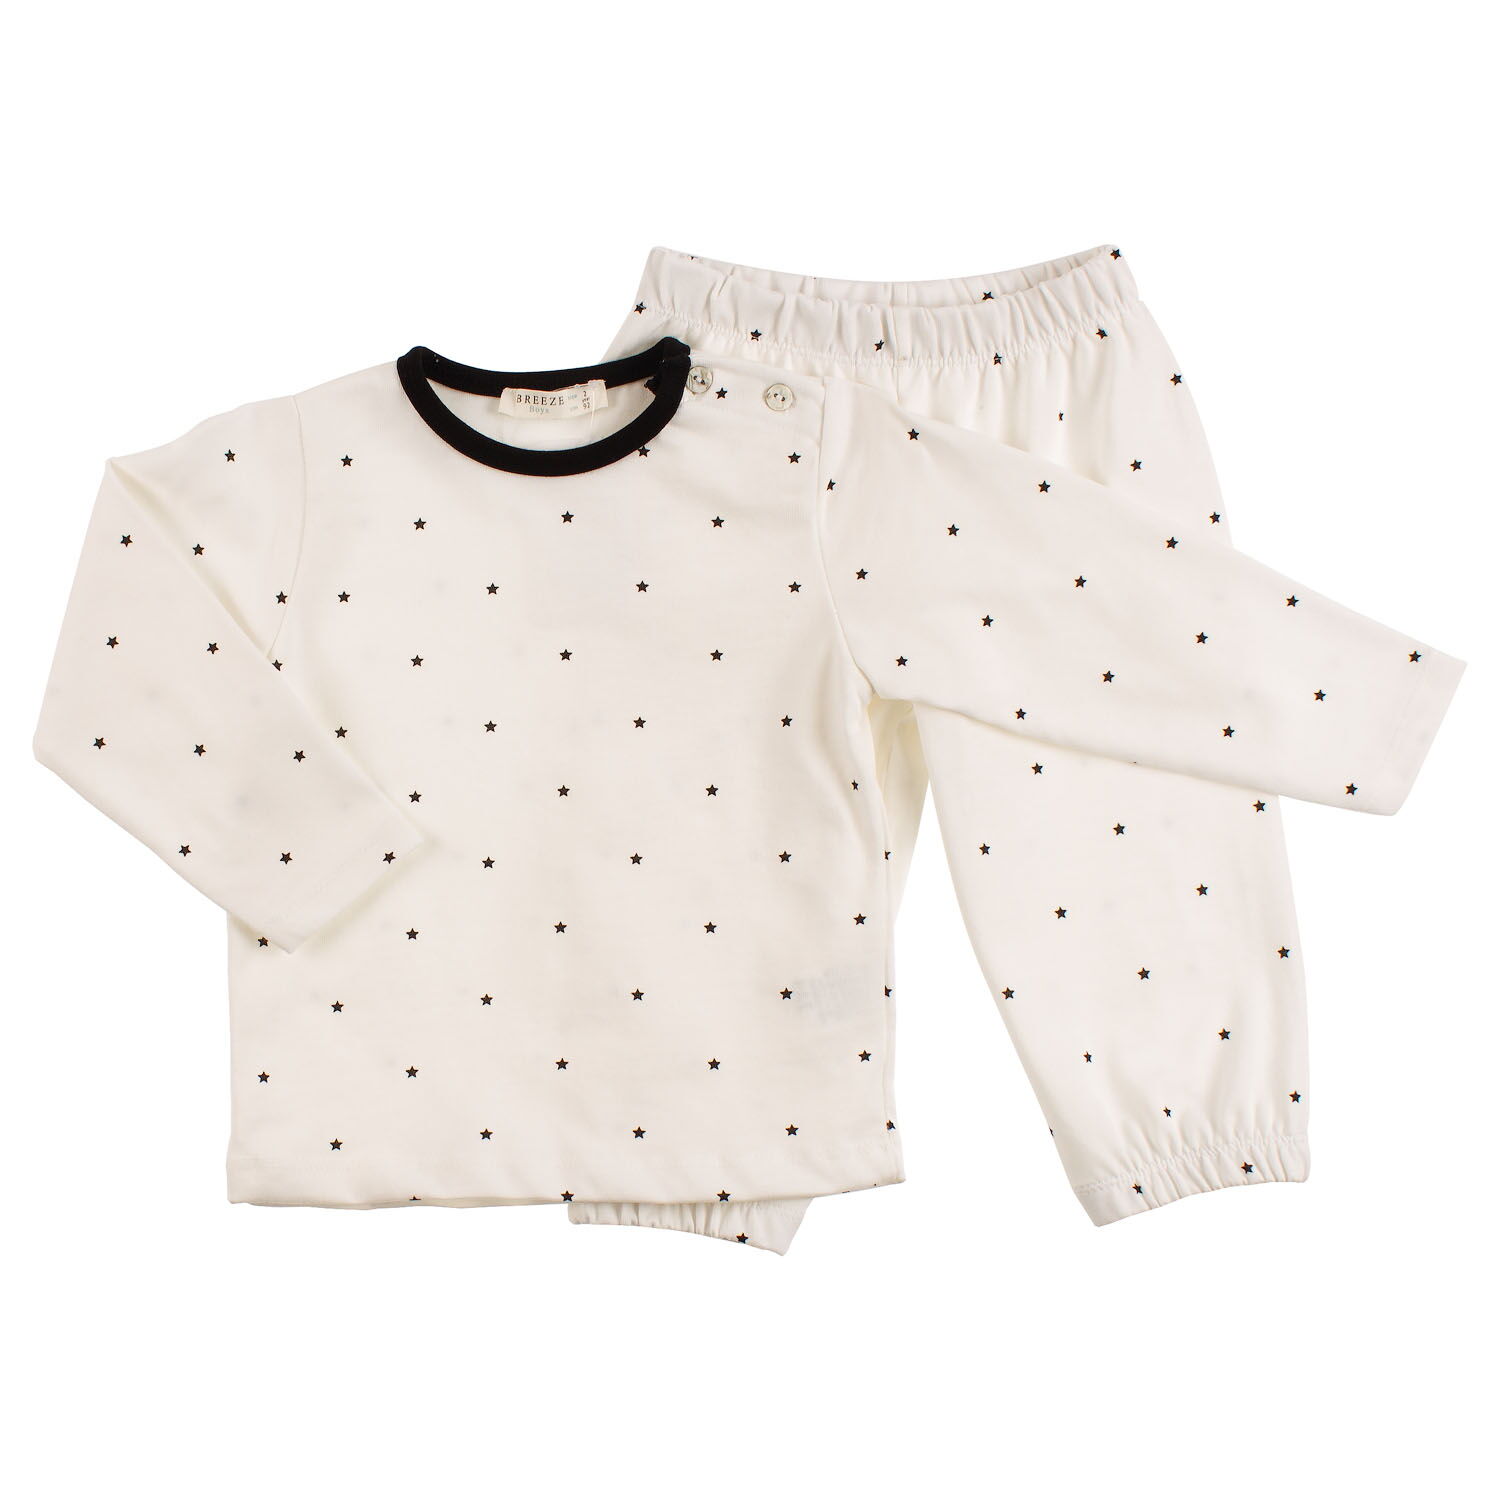 Пижама детская Breeze Звездочки белая 8382 - цена